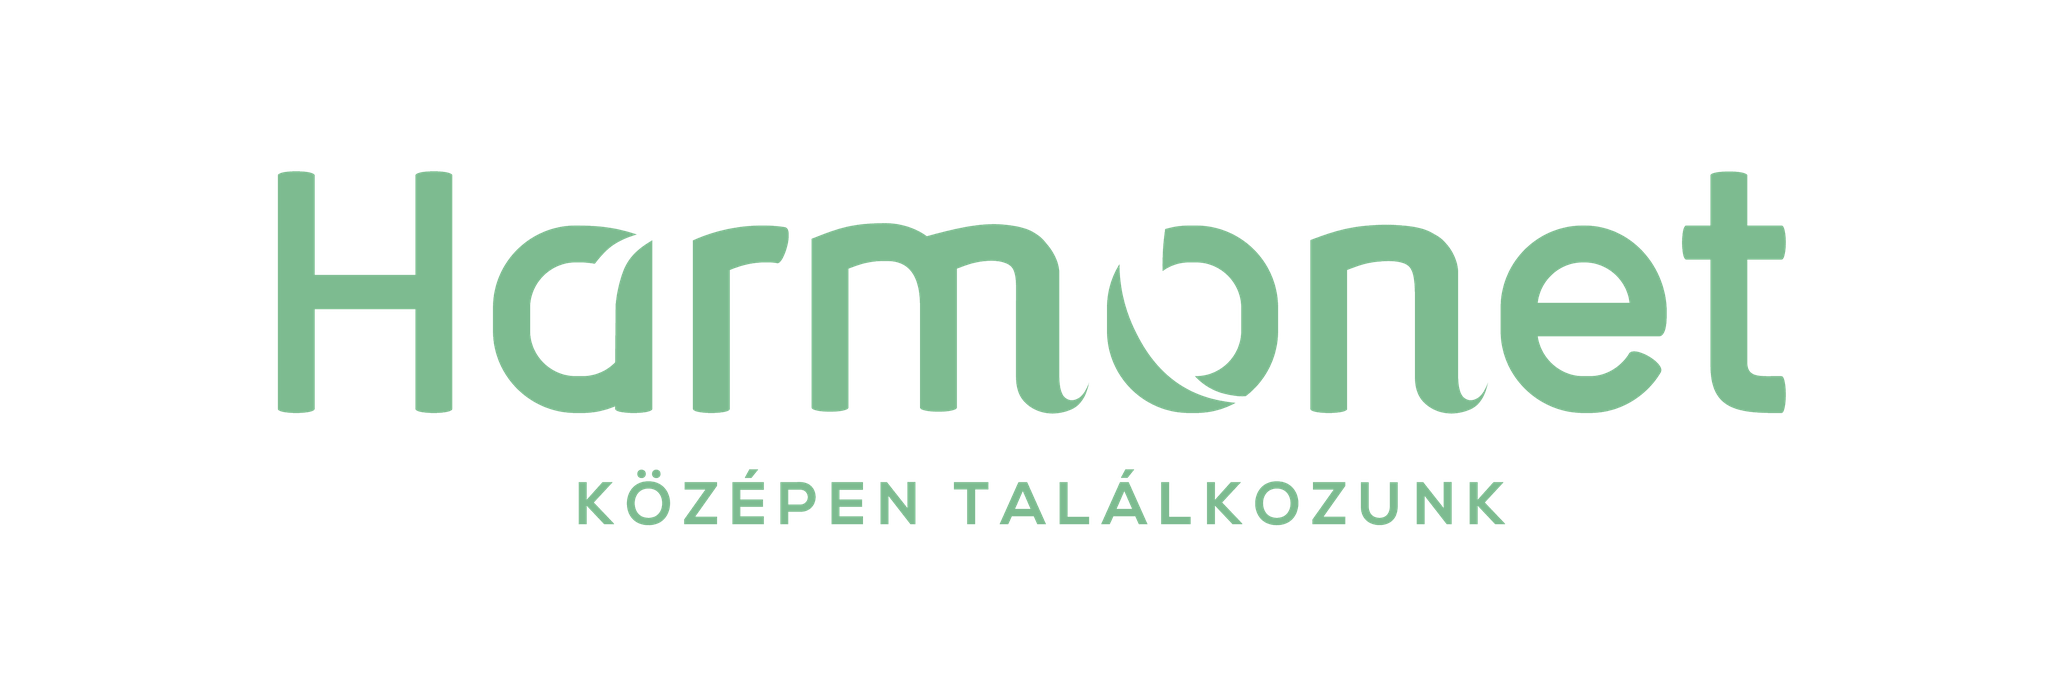 Harmonet logo, partner